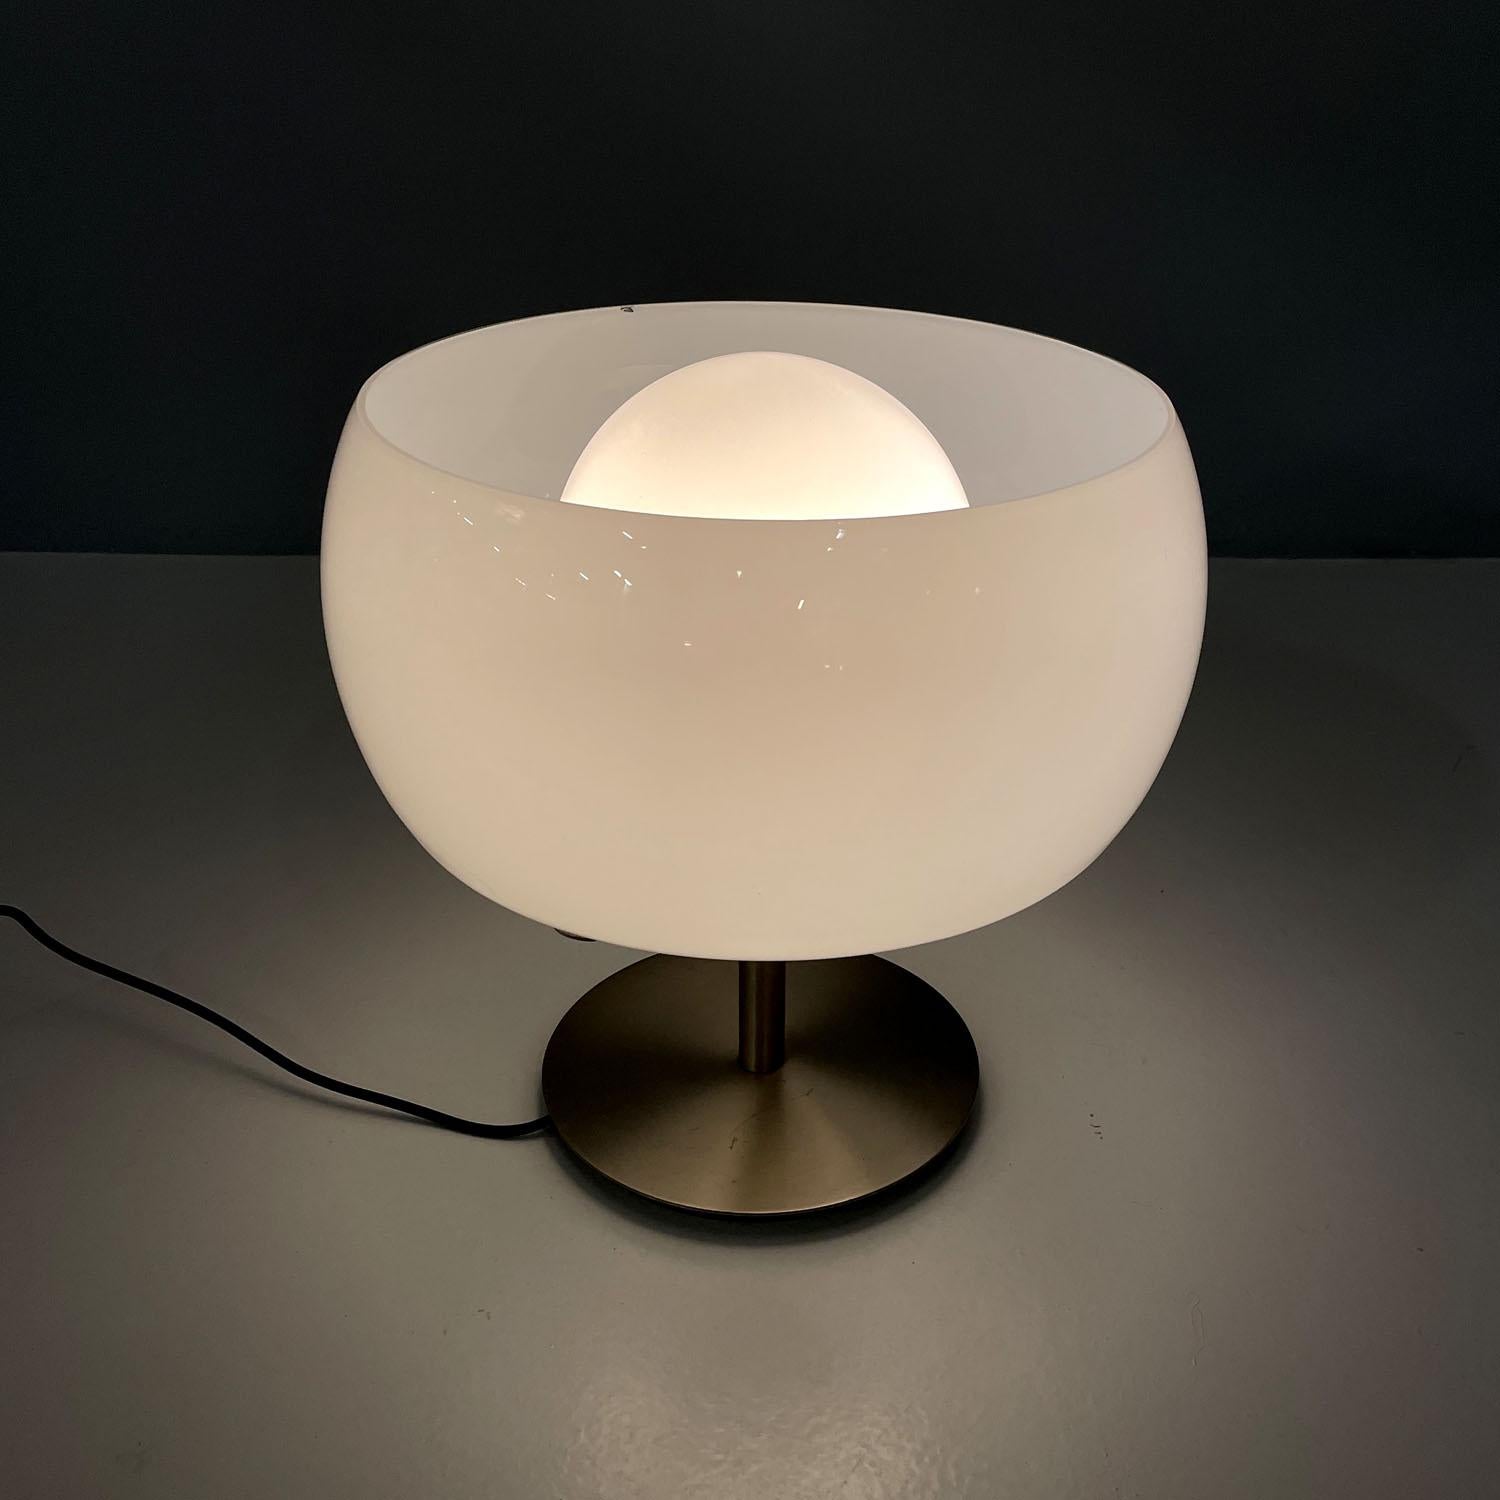 Lampe de table italienne moderne du milieu du siècle dernier Erse Vico Magistretti pour Artemide, années 1960
Lampe de table mod. Erse avec base ronde. La structure est composée d'une base et d'une tige centrale en métal nickelé bronzé. L'abat-jour